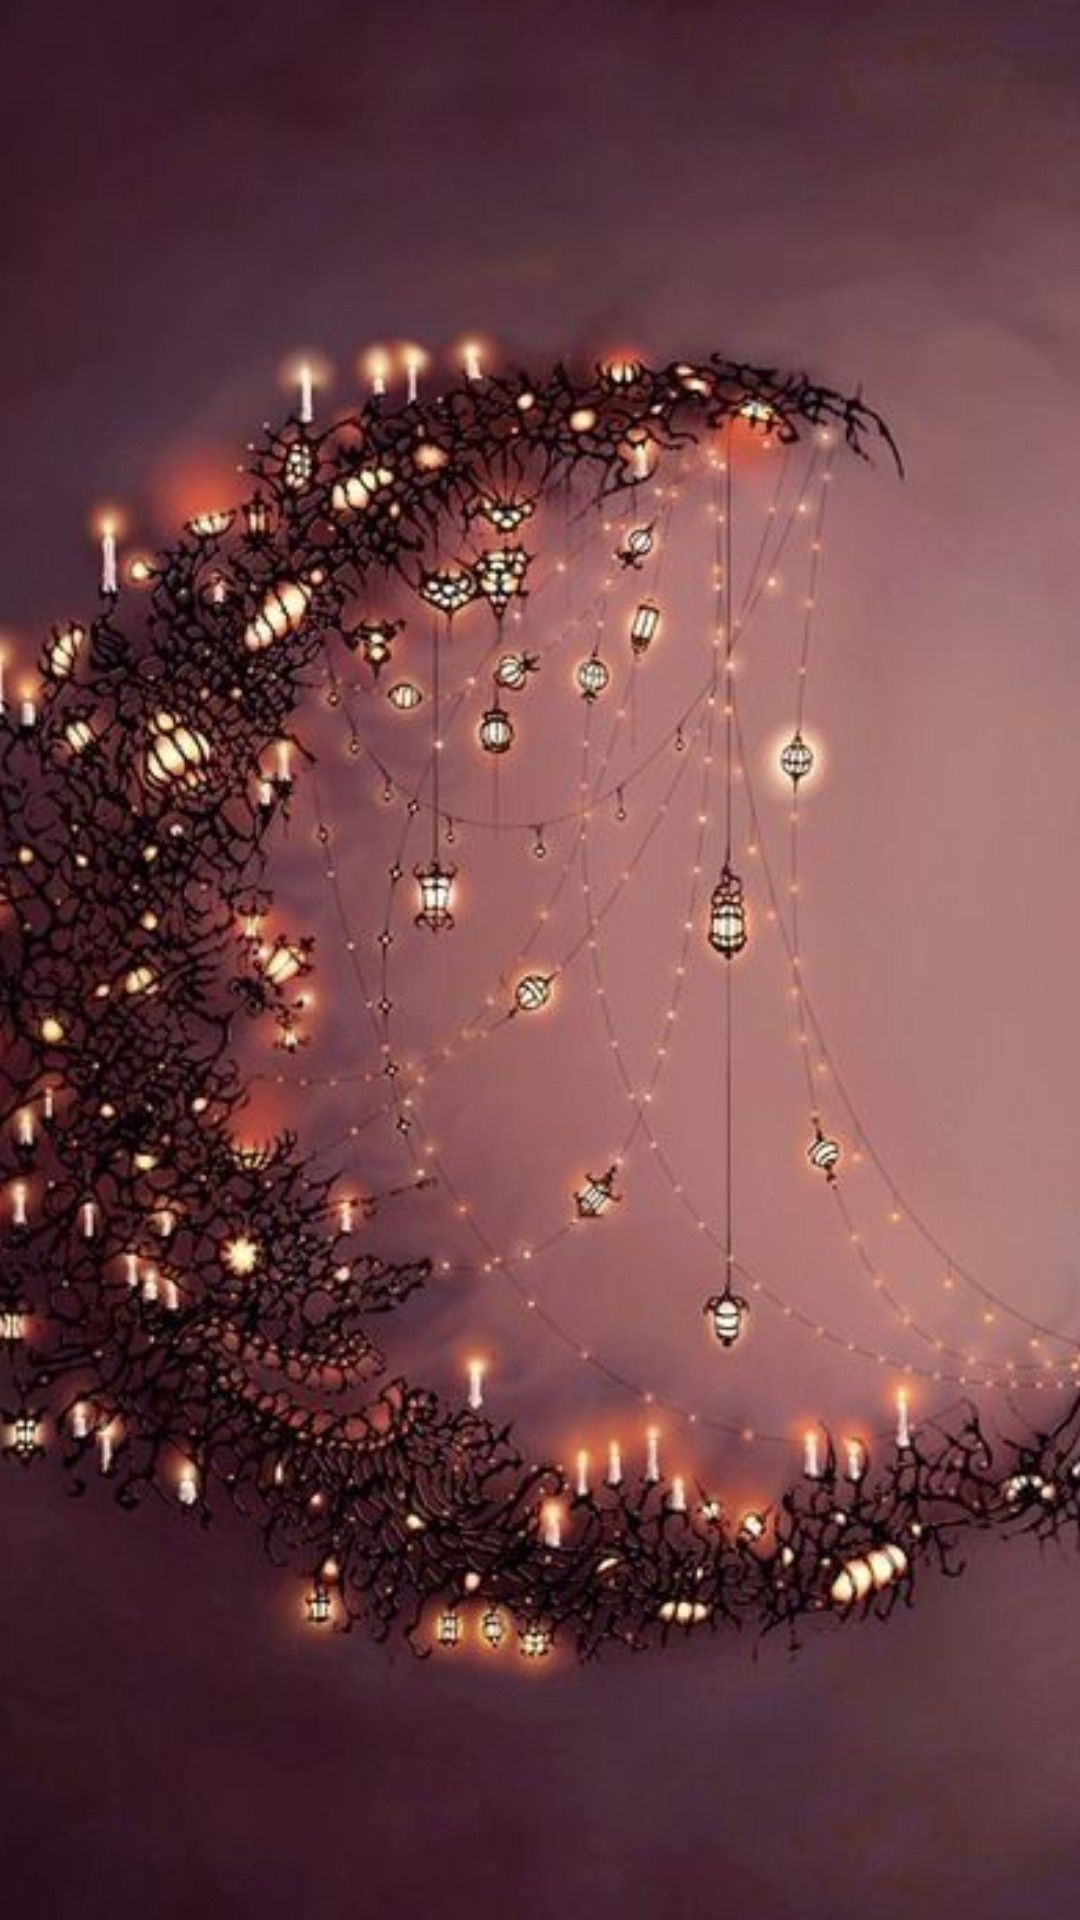 Wallpaper. Christmas lights wallpaper, Rituals set, Fairy decor